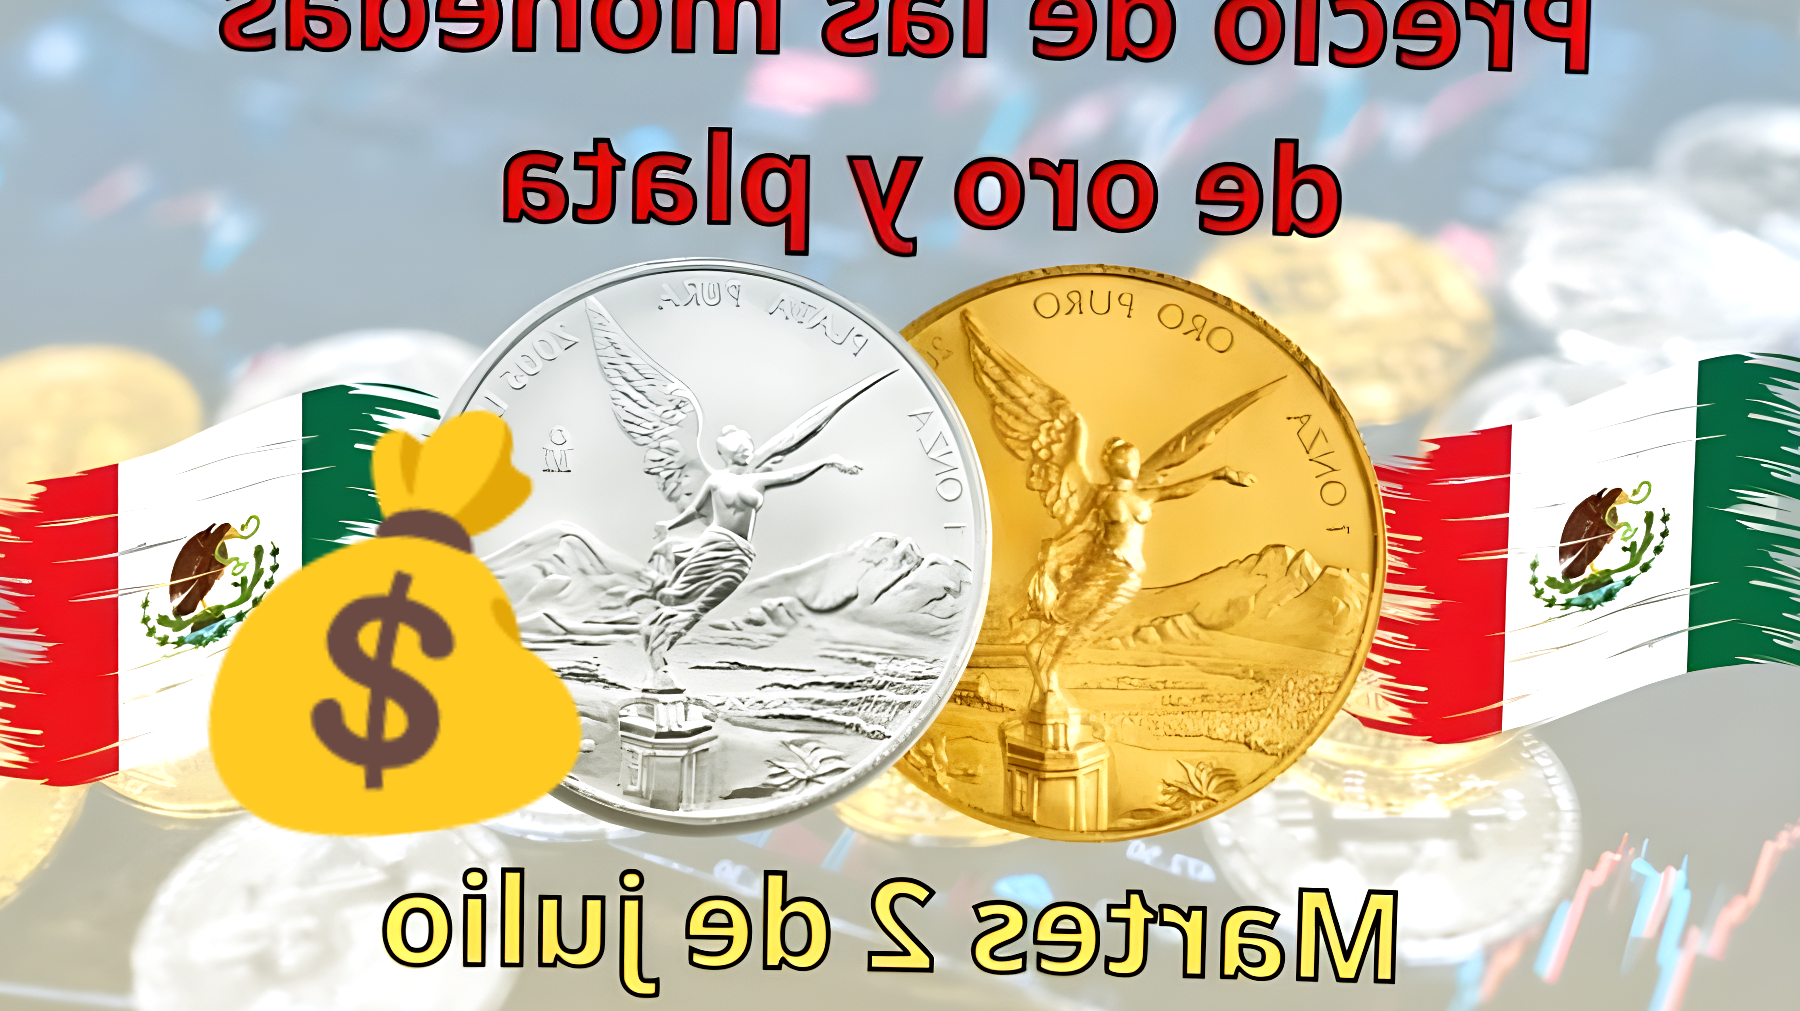 ¿El valor de las monedas de oro y plata alcanza cifras inesperadas? Descubre su precio este martes